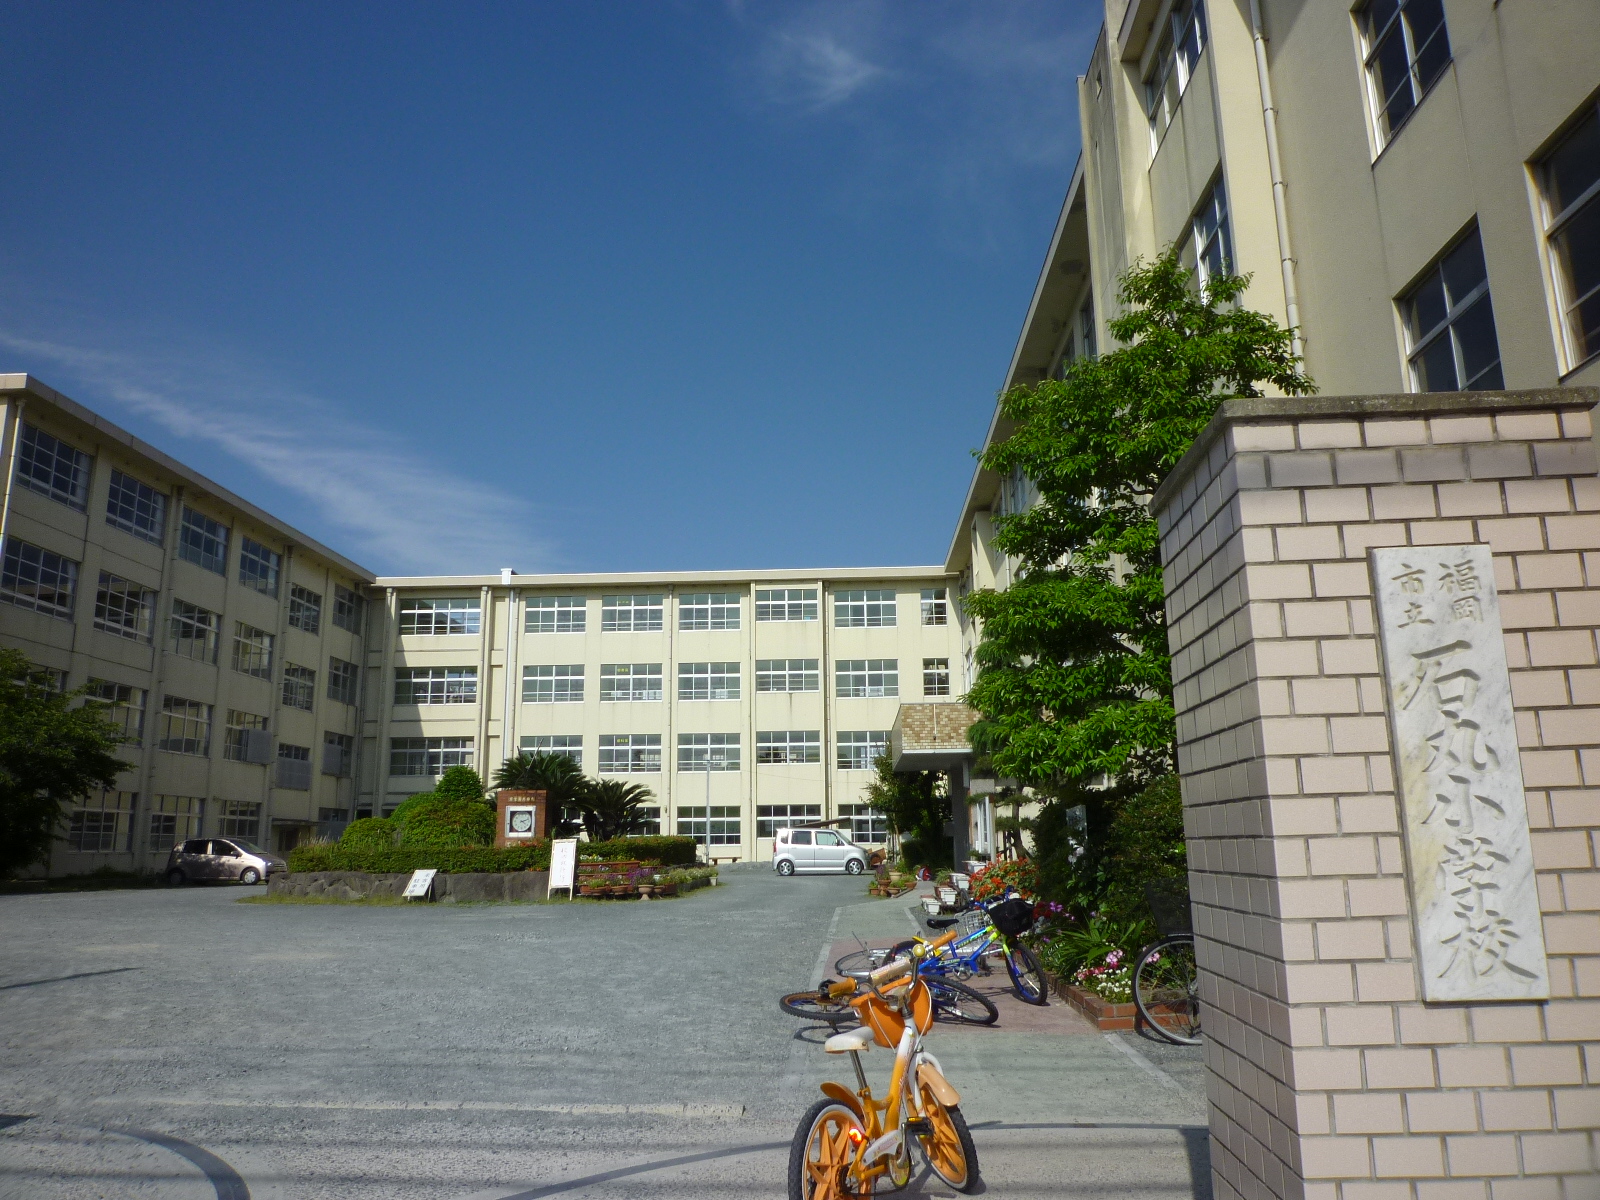 Primary school. 314m to Fukuoka Tateishi round elementary school (elementary school)